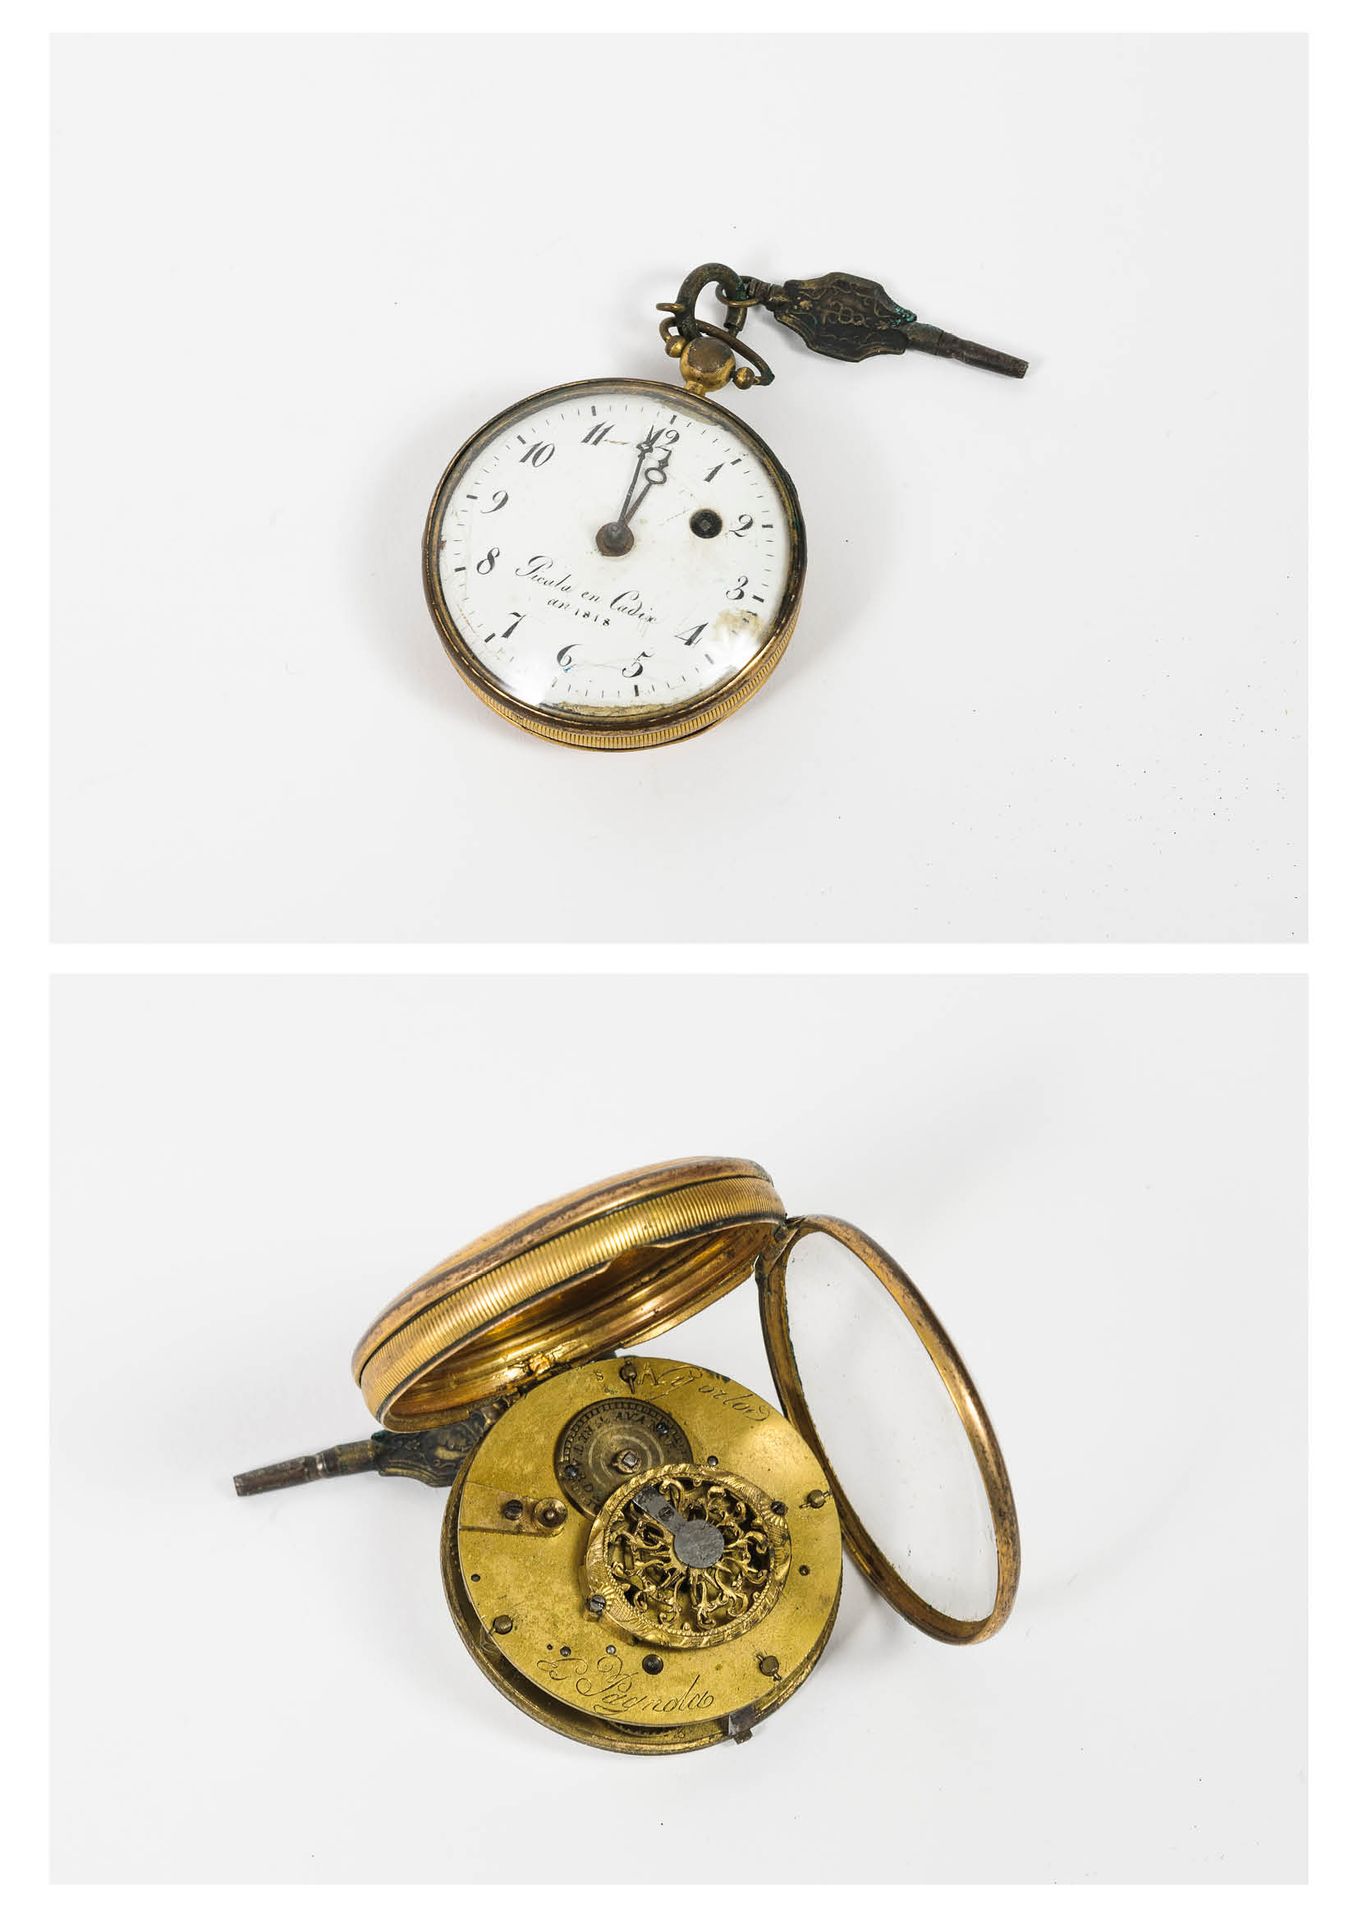 Null 三个怀表:

- 一个是鎏金铜的。

白色珐琅表盘，签署于加的斯的PICALA，年份为1818年，黑色油漆，罗马数字代表小时，破折号代表分钟。

机械&hellip;